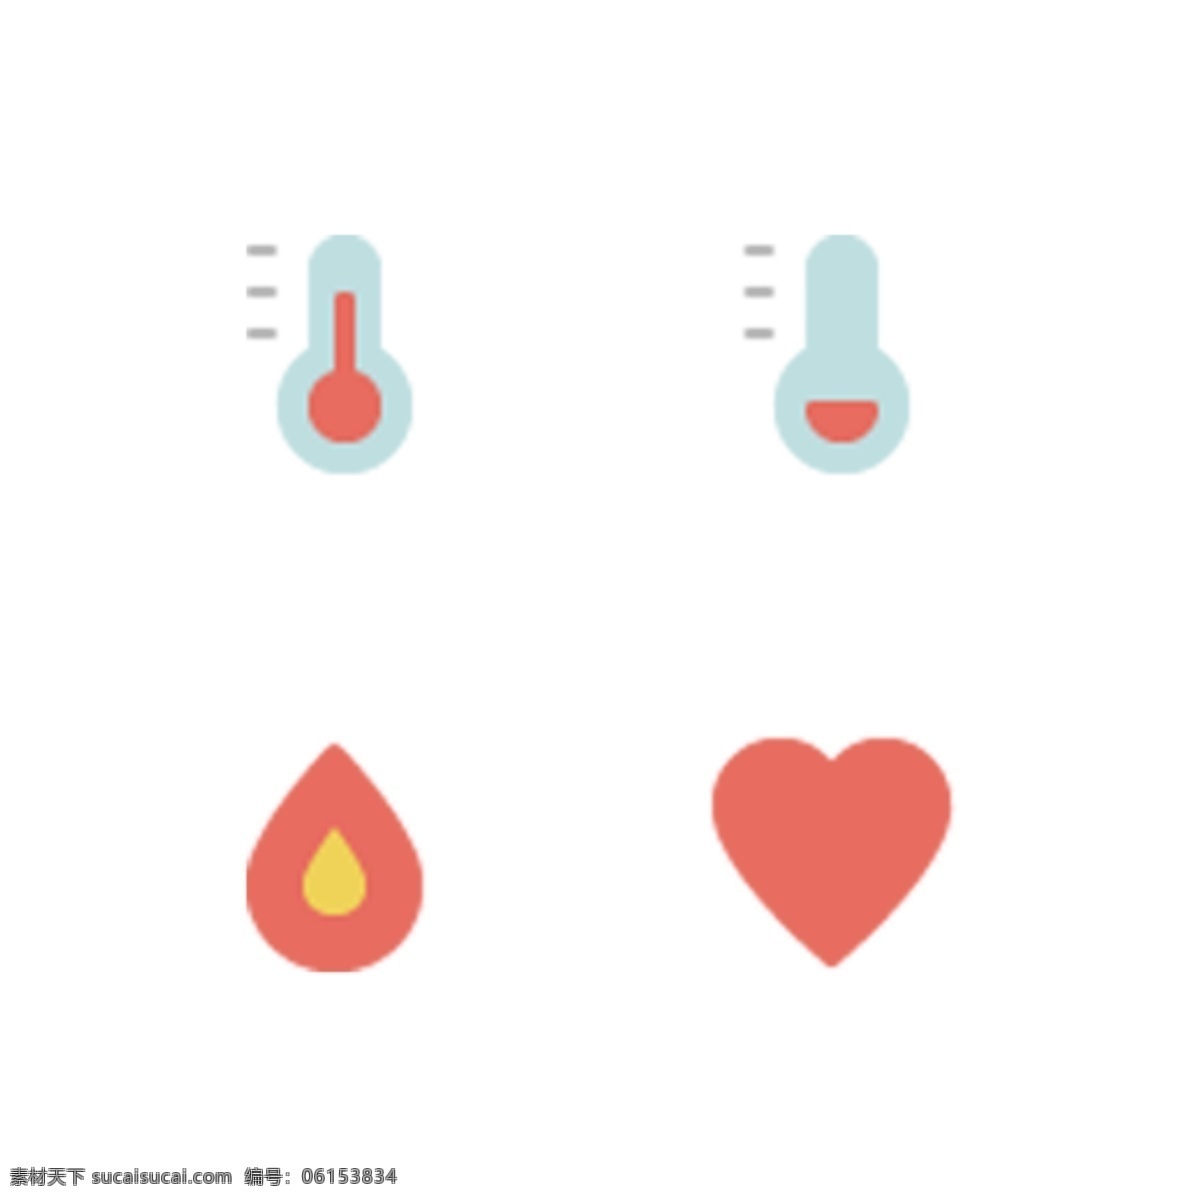 彩色 创意 医疗 健康 图标 元素 心跳 心形 试管 火焰 扁平化 ui 体温 测量